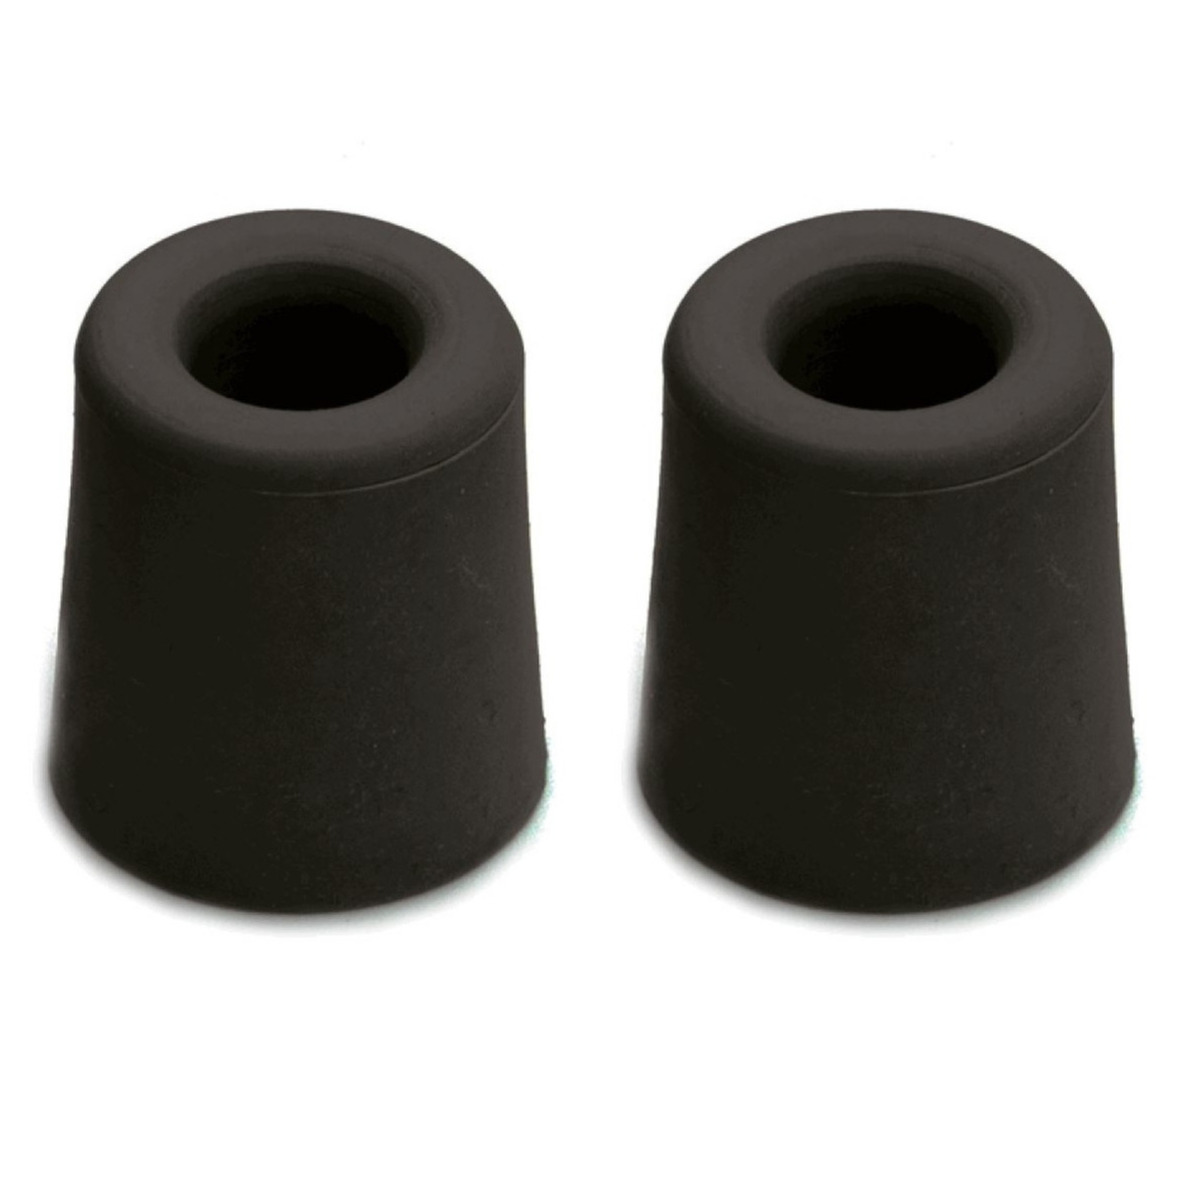 5x stuks rubberen deurbuffers-deurstoppers zwart 4,8 x 3,7 cm